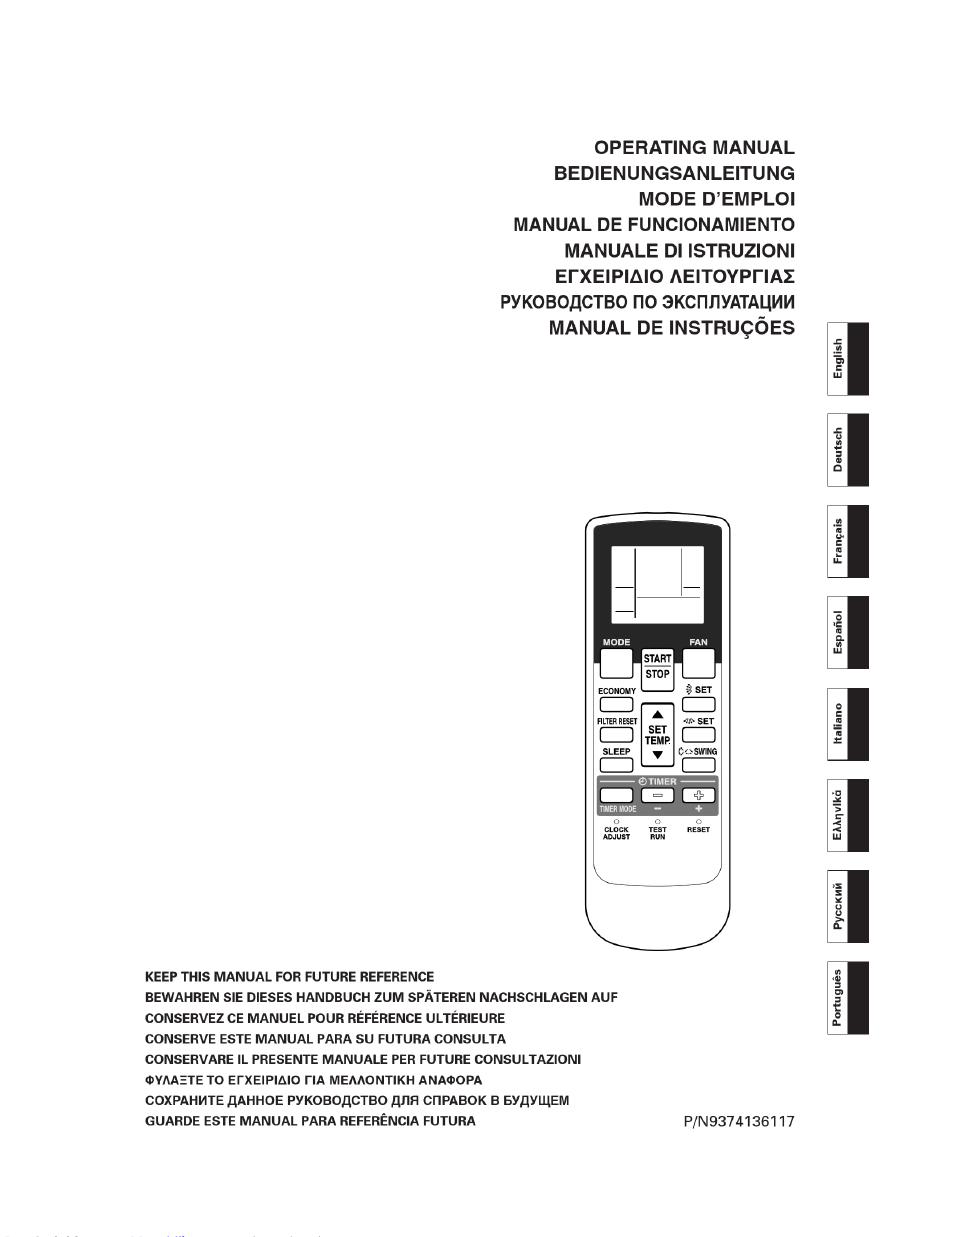 Bravo 13 in 1 remote control manual pdf